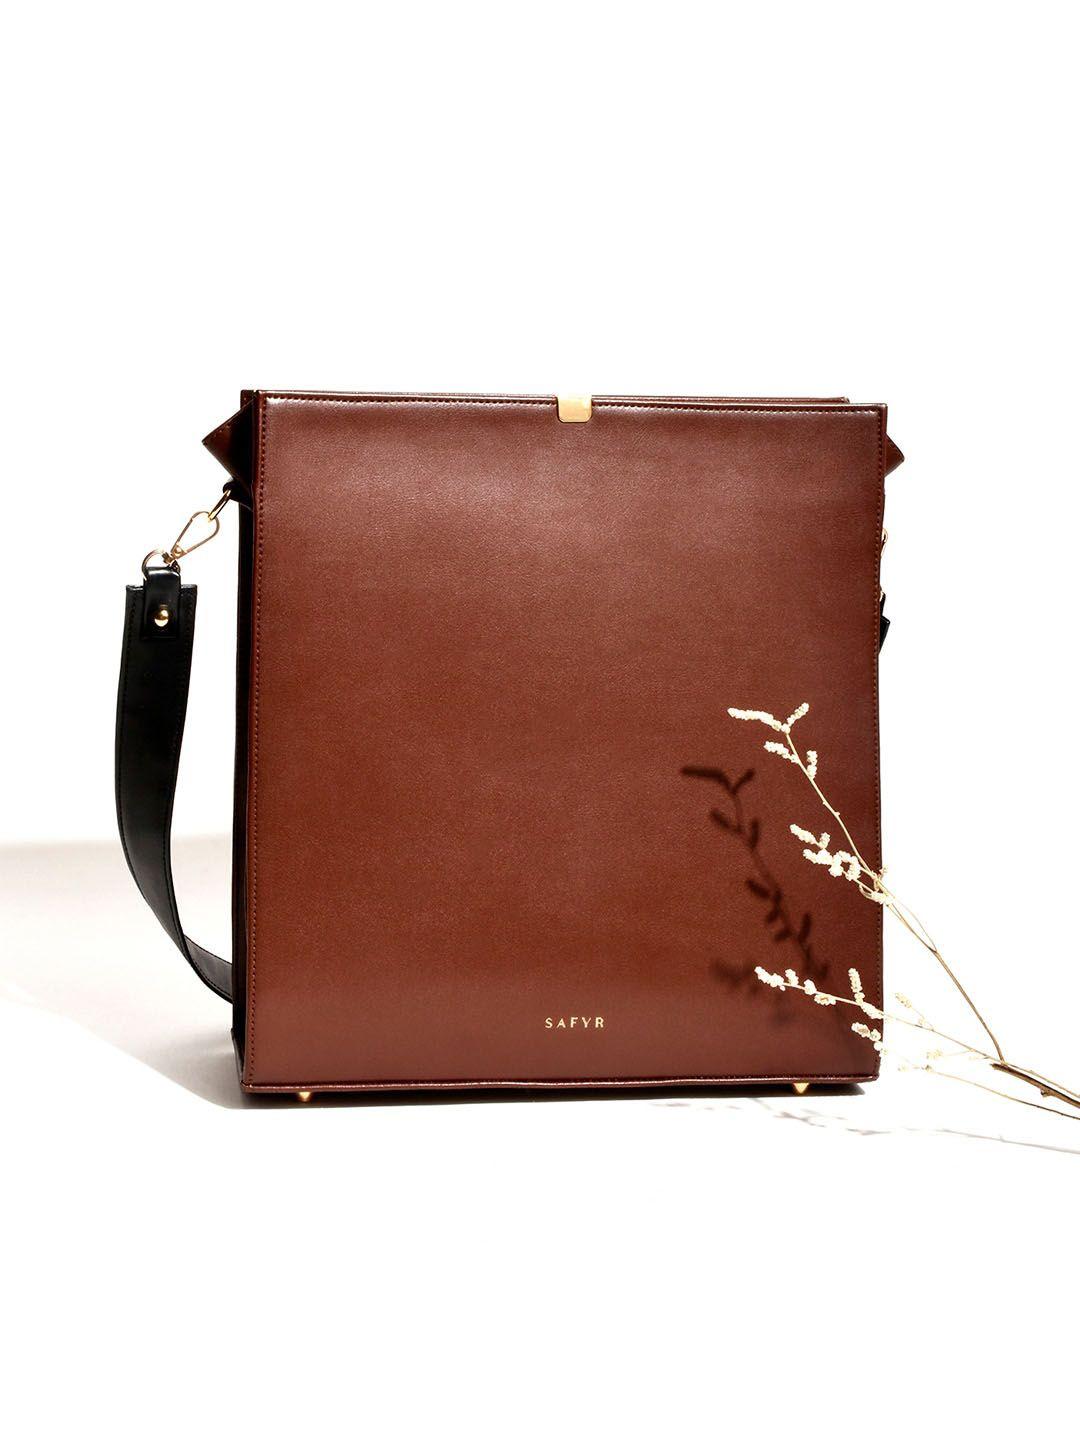 safyr brown structured sling bag